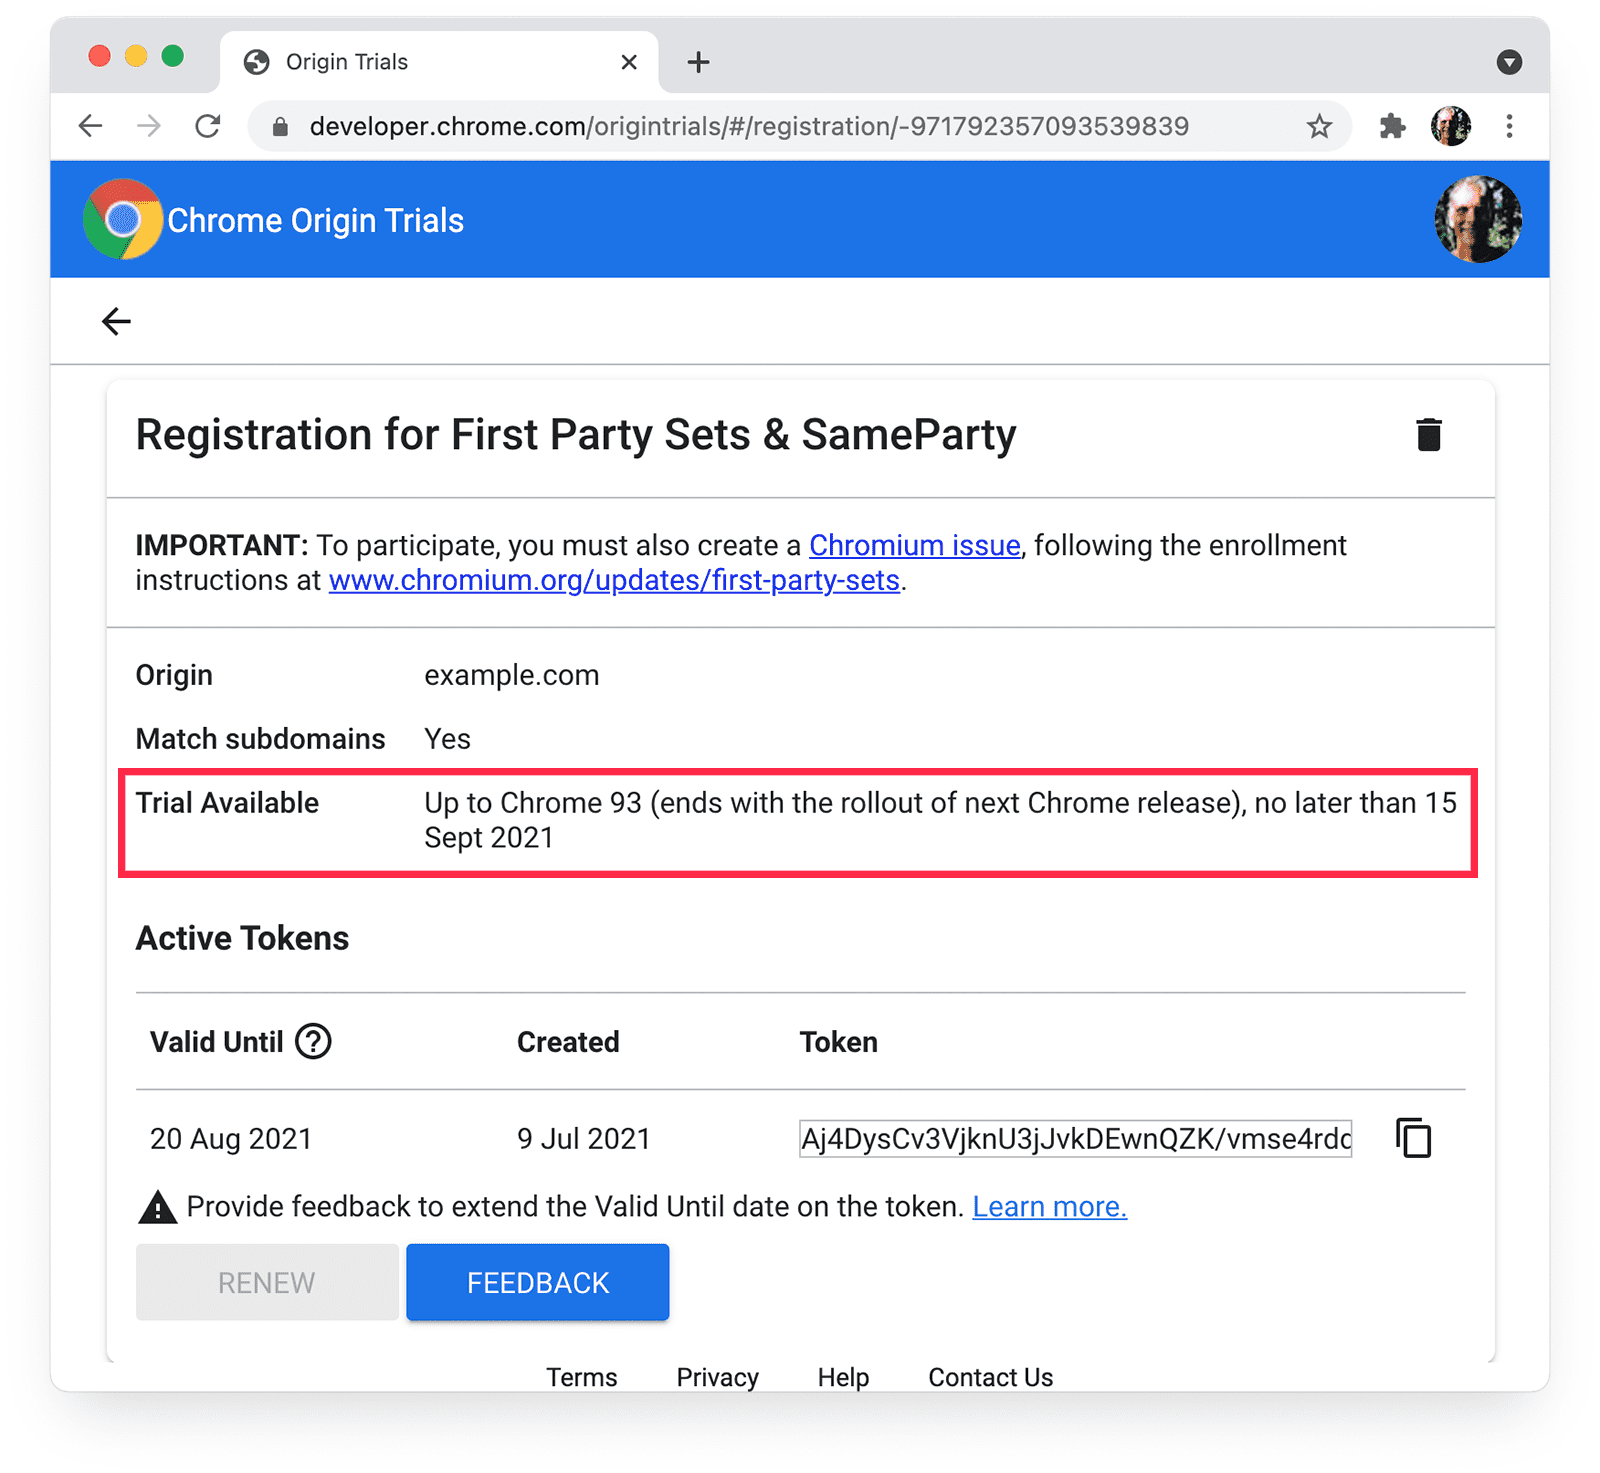 पहले पक्ष के सेट और समान पार्टी के लिए, Chrome ऑरिजिन ट्रायल
पेज पर मुफ़्त में आज़माने की सुविधा के बारे में जानकारी को हाइलाइट किया गया है.